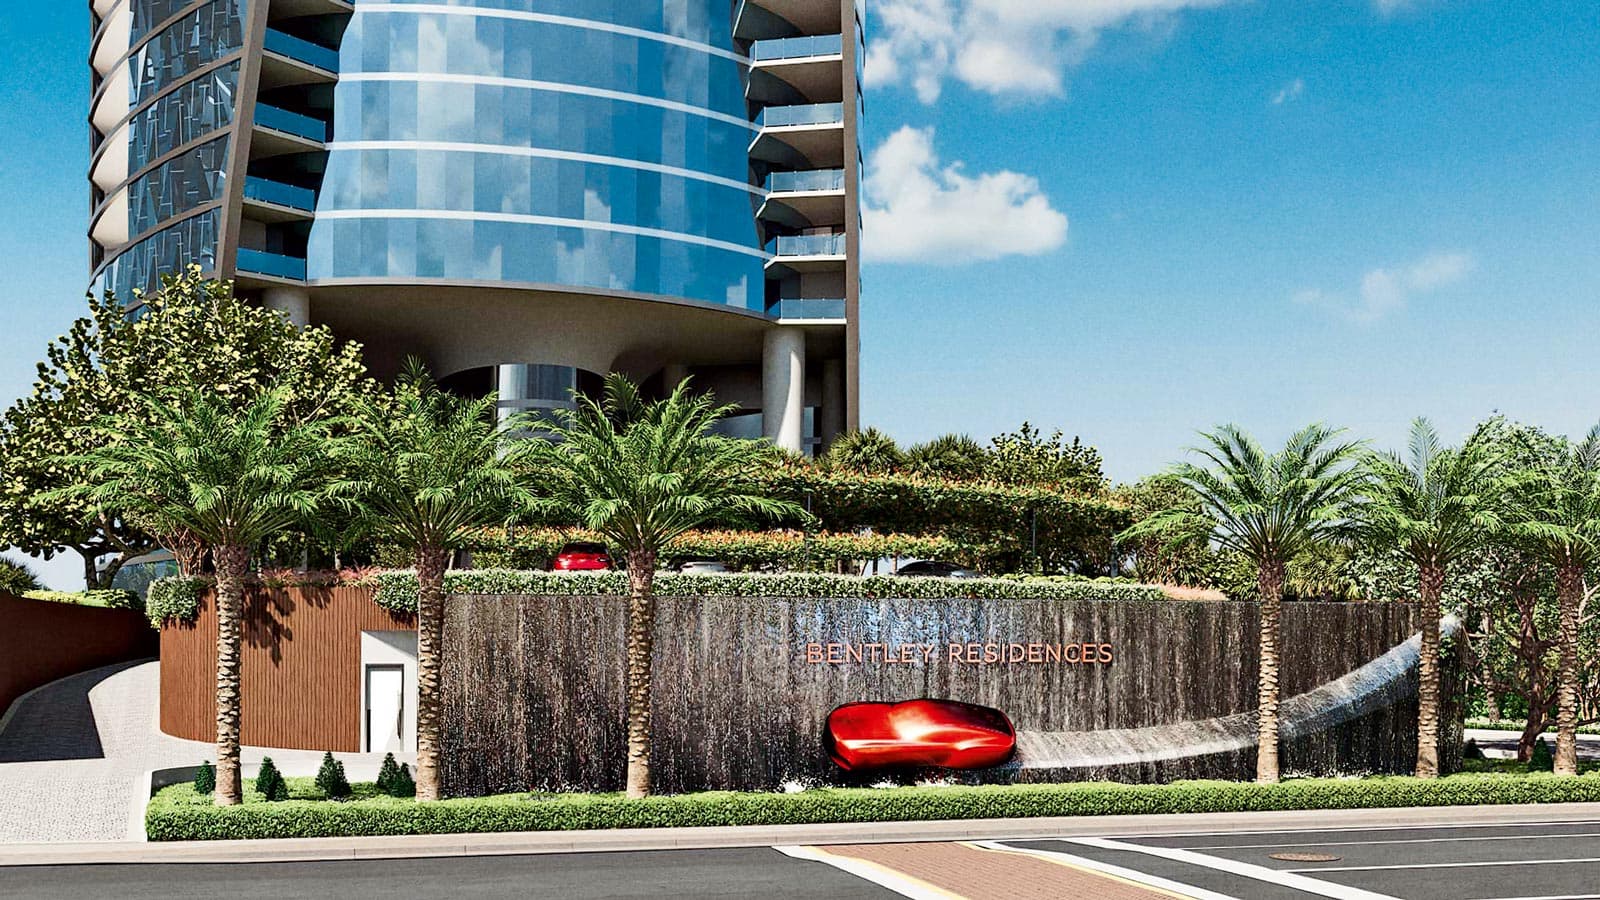 Bentley Residences Miami  – không gian của những tín đồ siêu xe